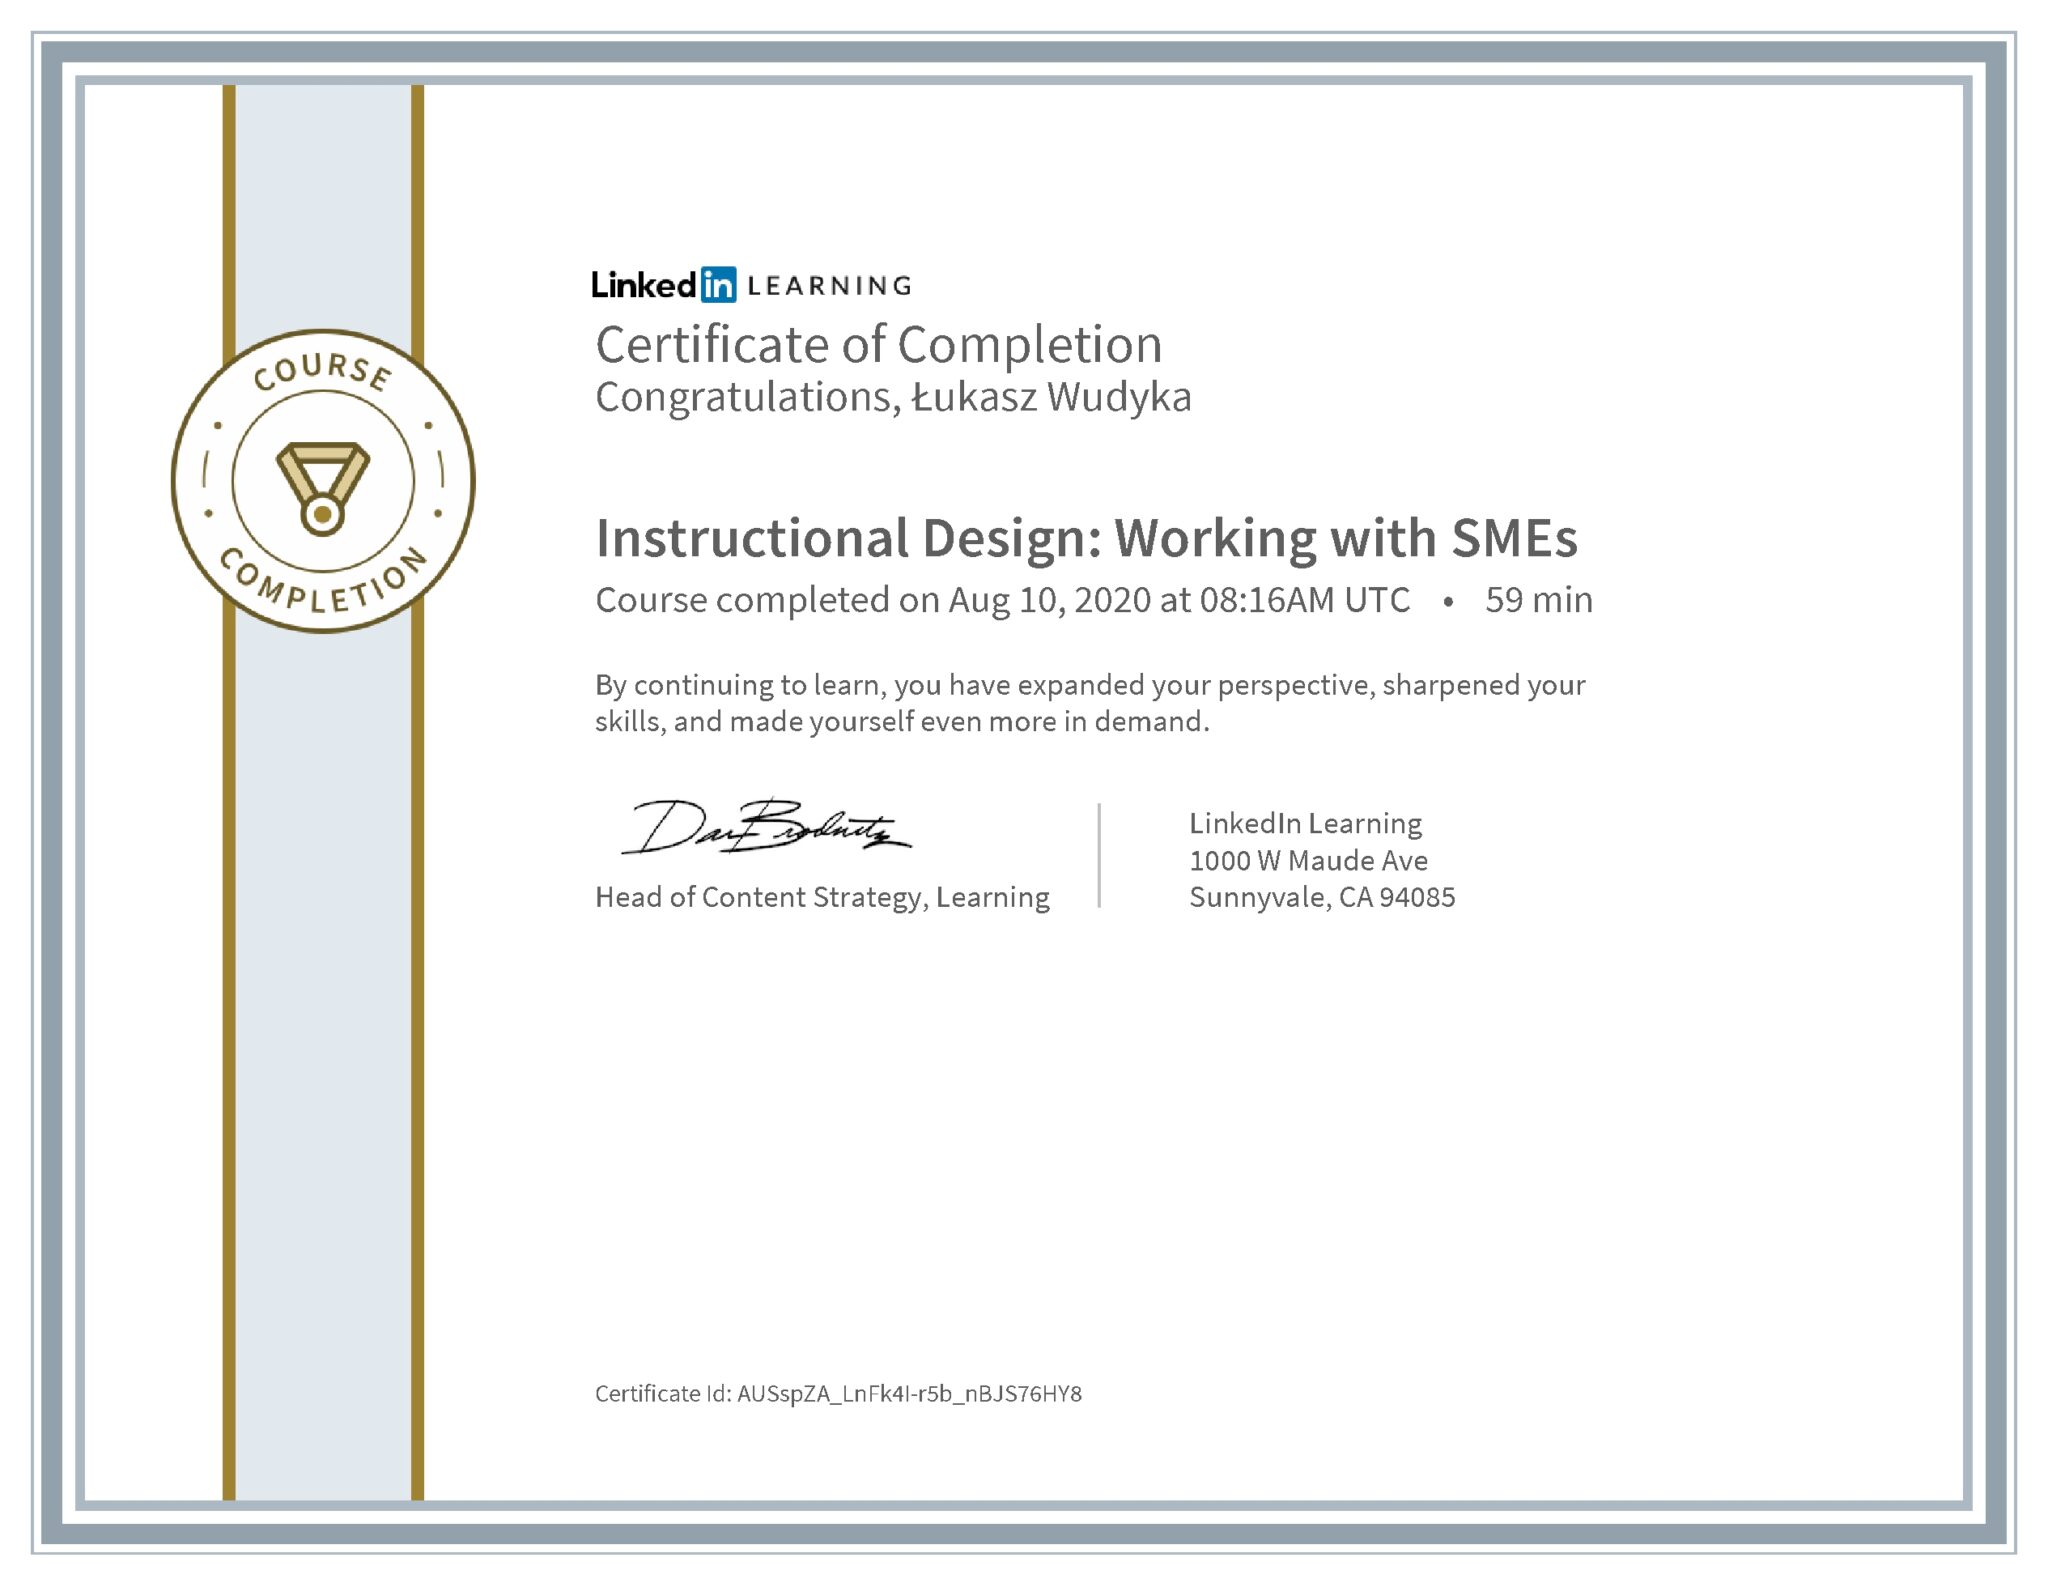 Łukasz Wudyka certyfikat LinkedIn Instructional Design: Working with SMEs